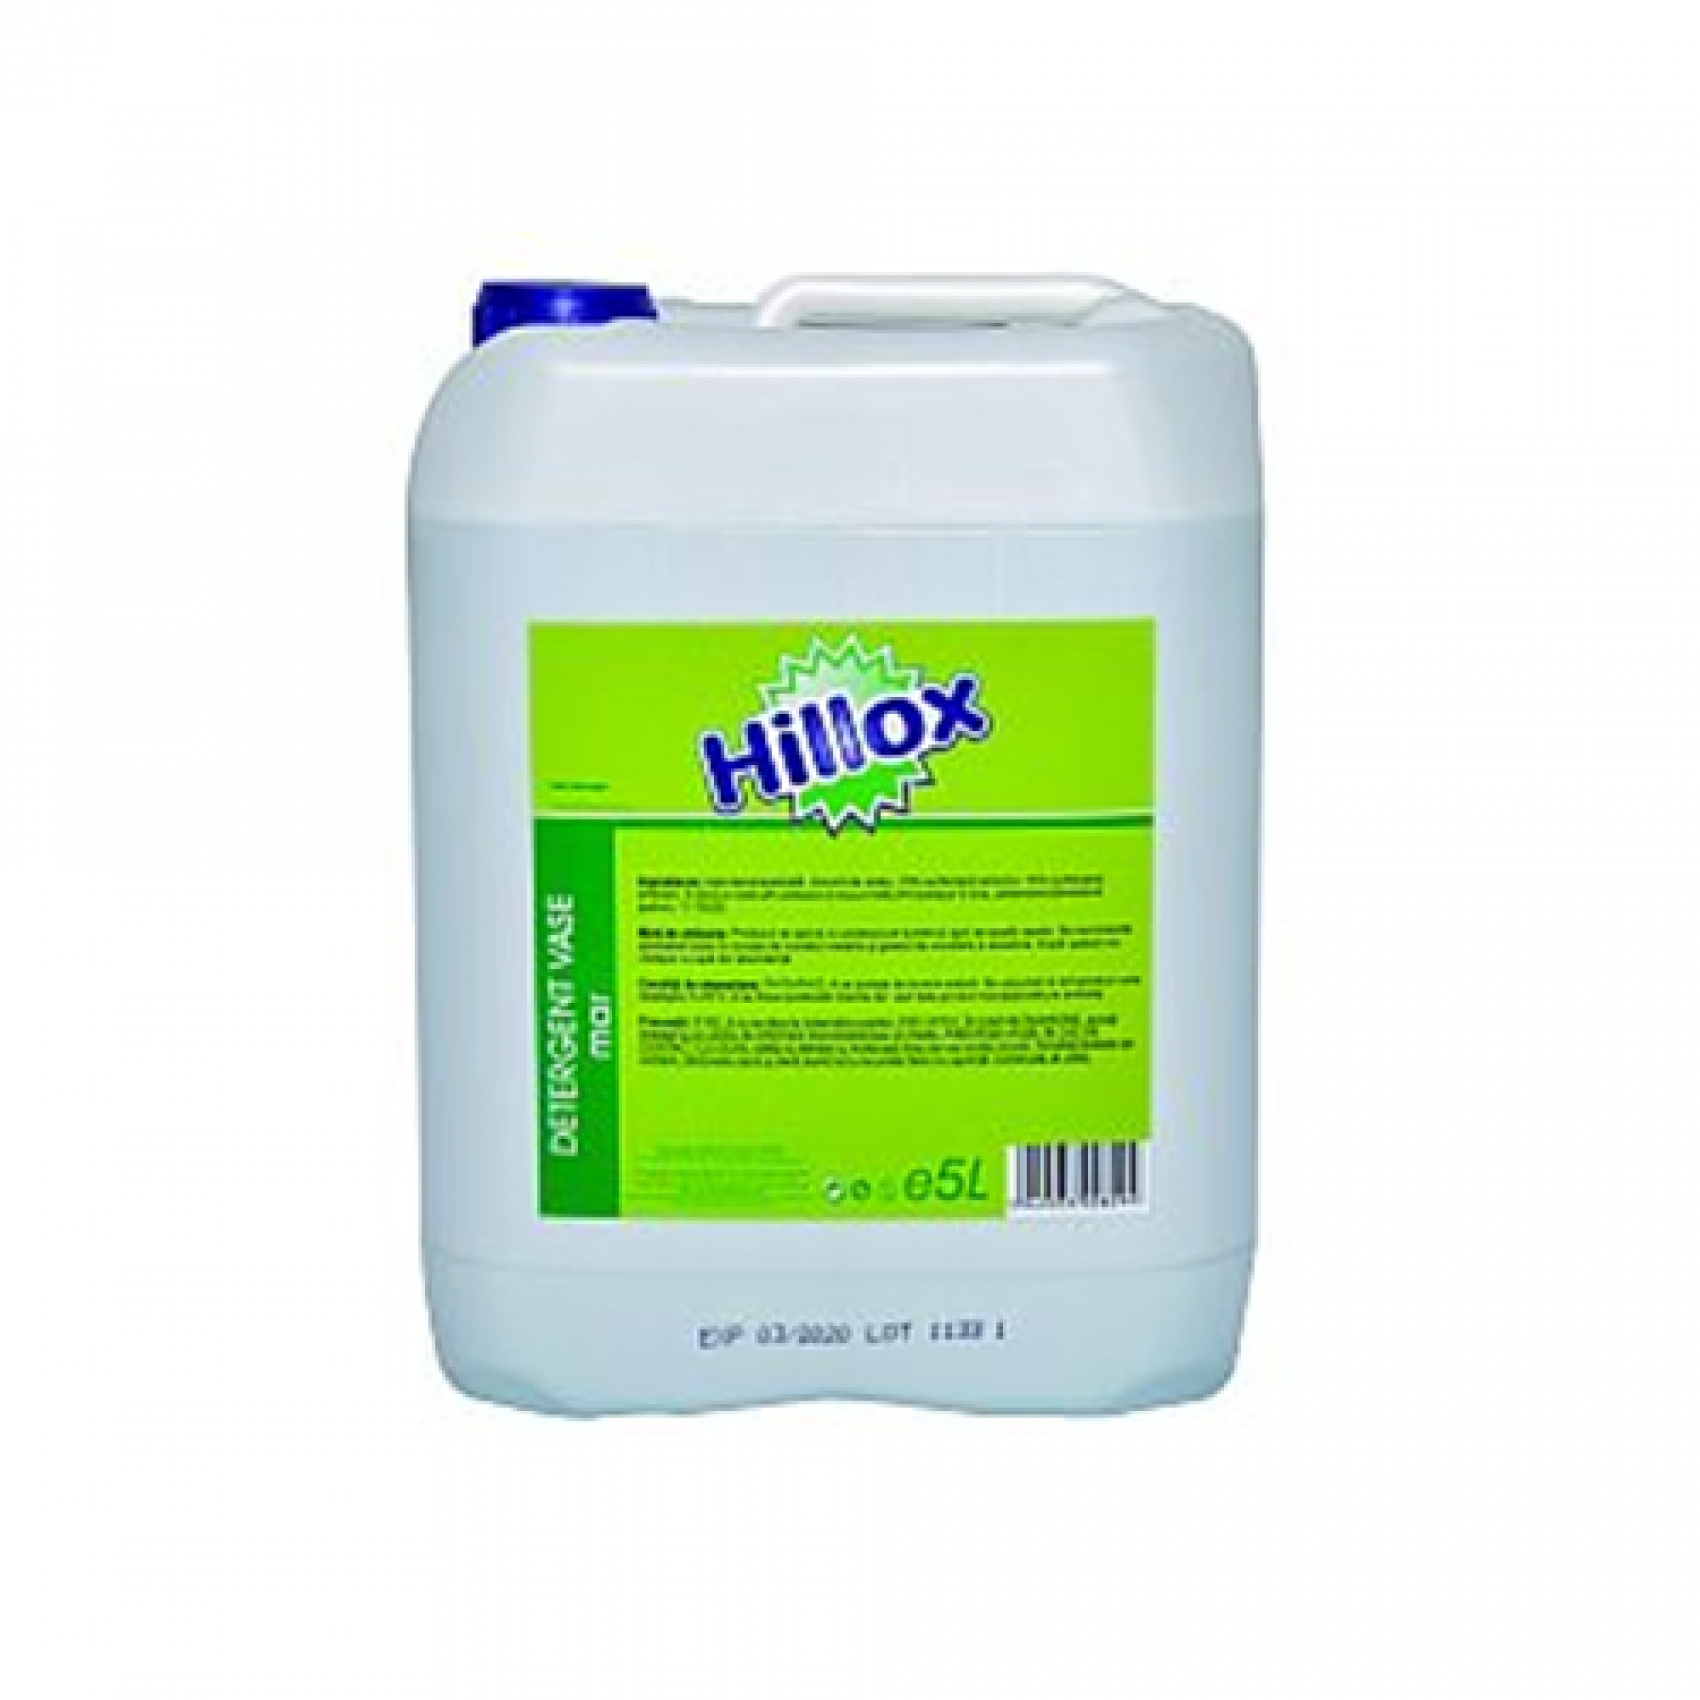 Detergent vase manual Hillox Mar - canistra 5 litri